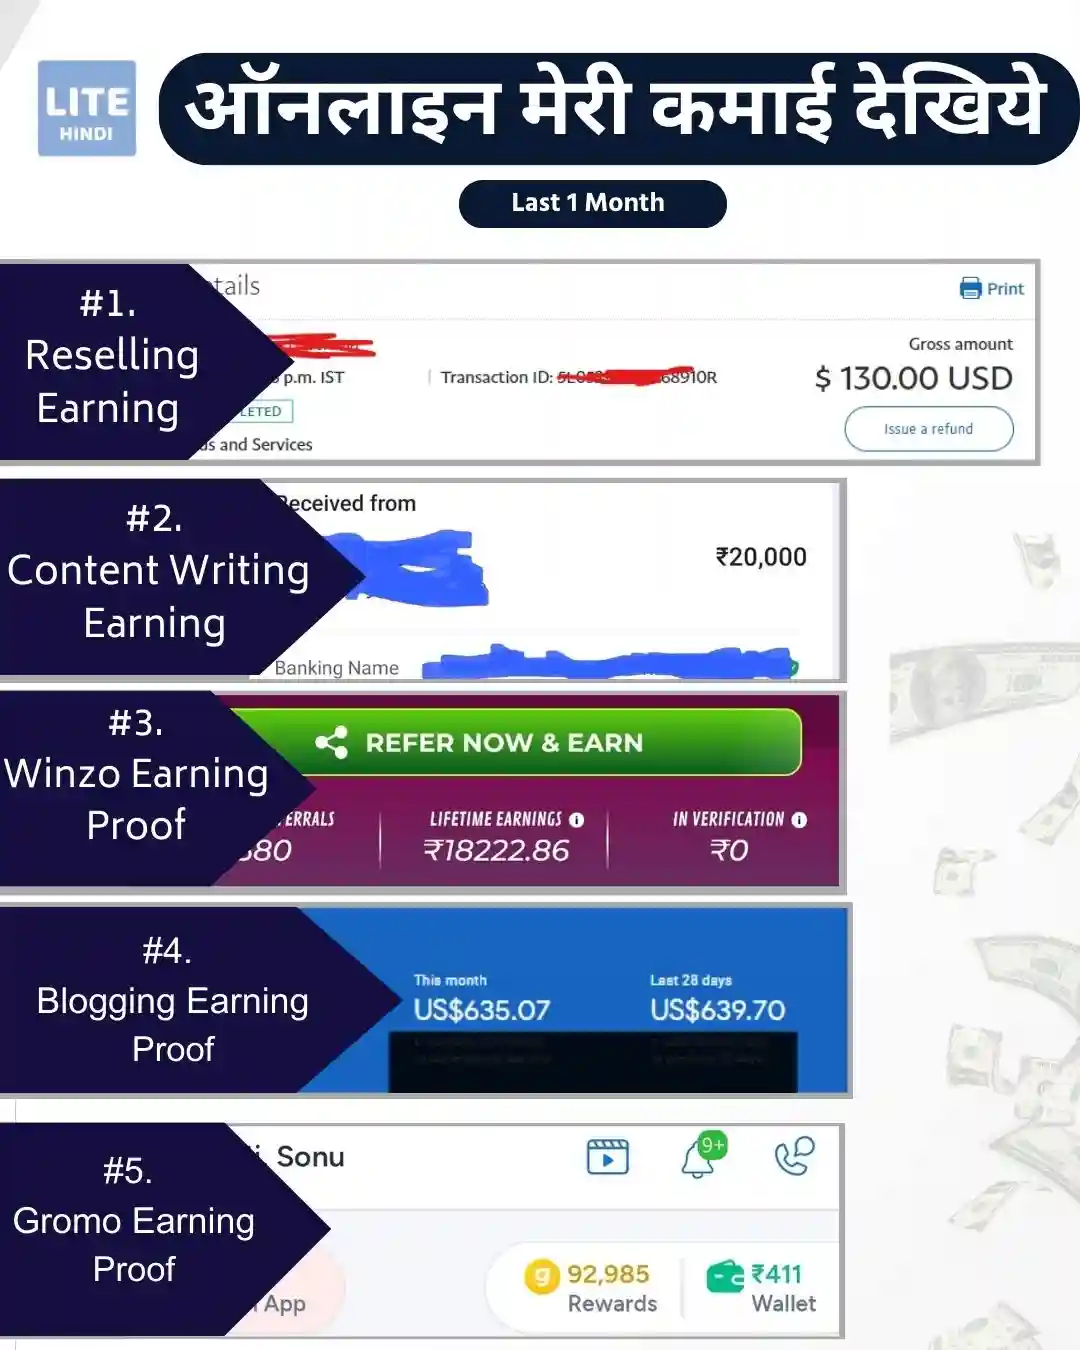 LiteHindi Blog के मालिक ऑनलाइन कितना पैसा कमाते हैं ?